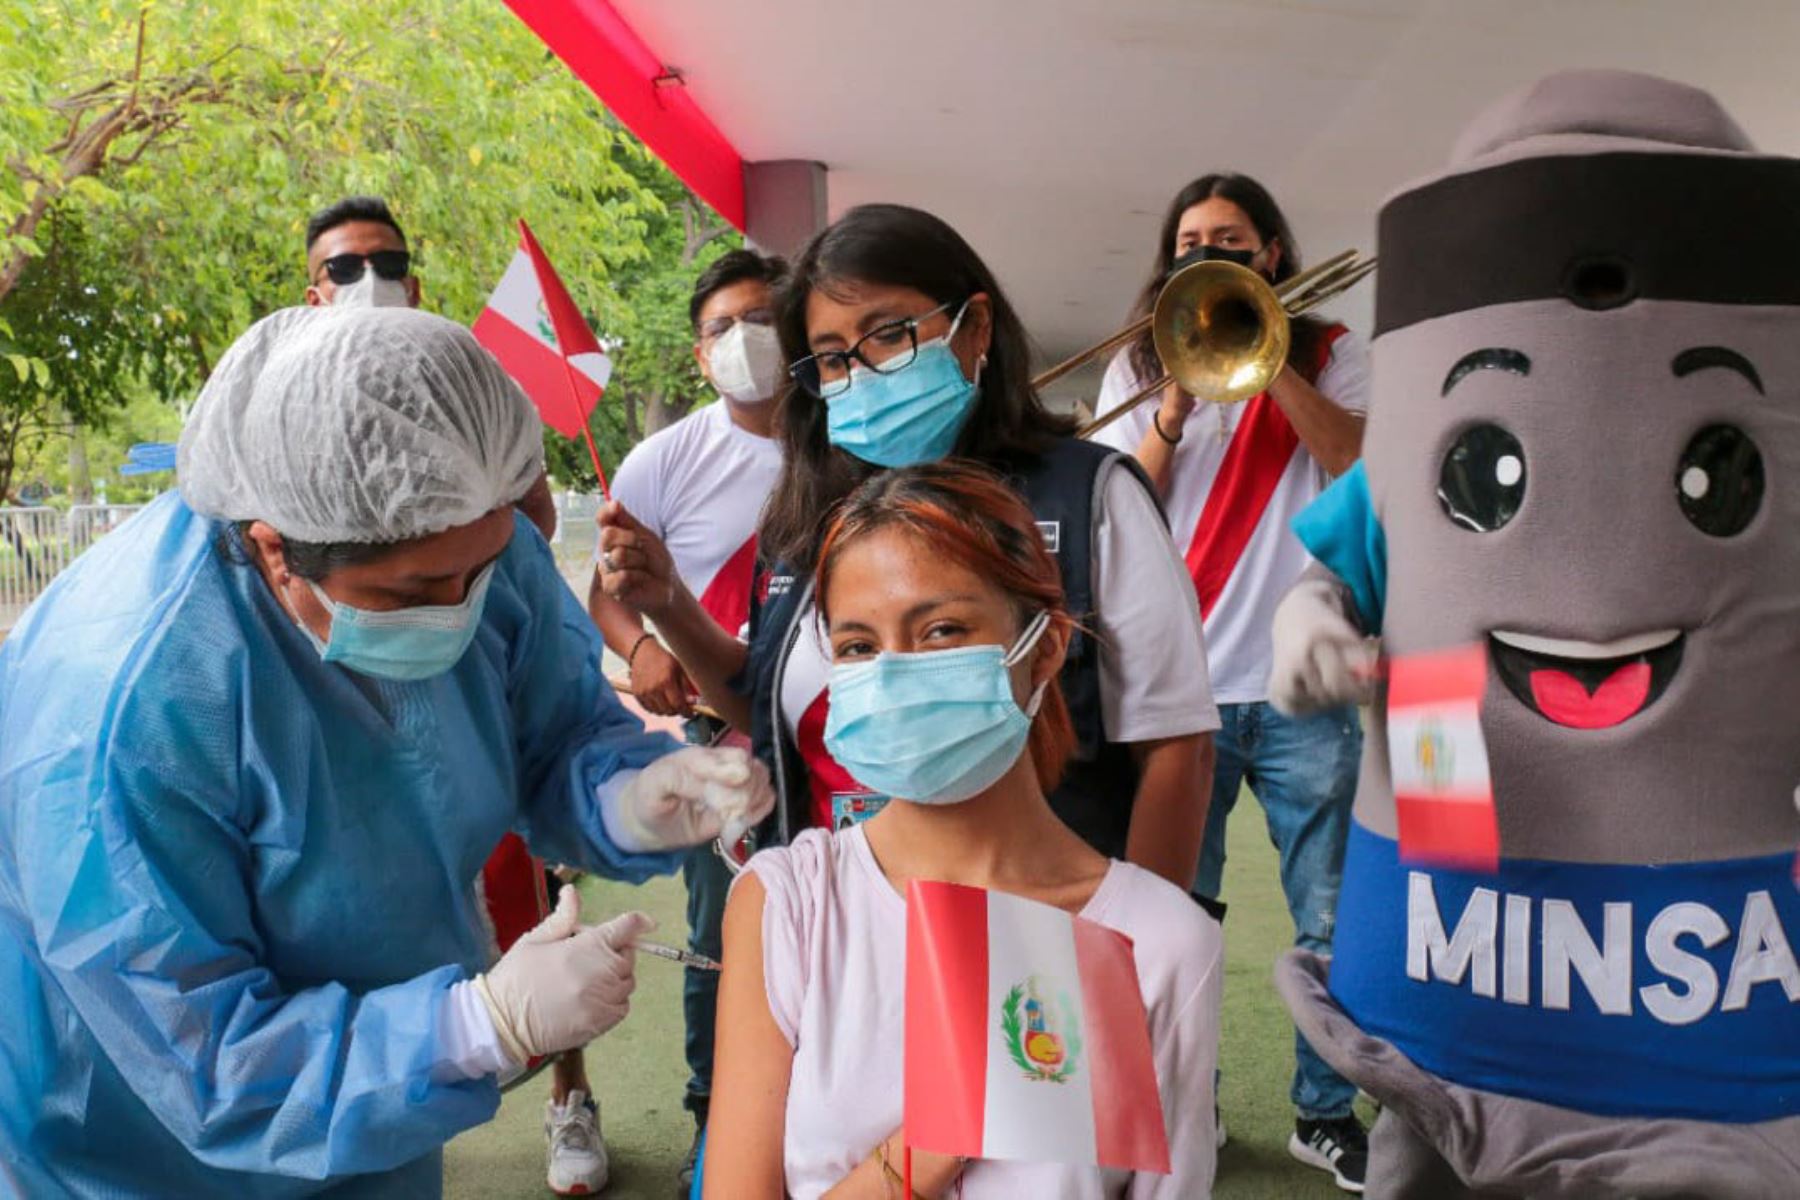 MINSA realiza lanzamiento del VacunaFest Blanquirrojo que regalará entradas para el partido Perú - Paraguay
El concurso “Alentar es Proteger. Completa tus dosis” tiene la finalidad de promover que la población complete su esquema de vacunación contra la COVID-19.
Foto: Minsa